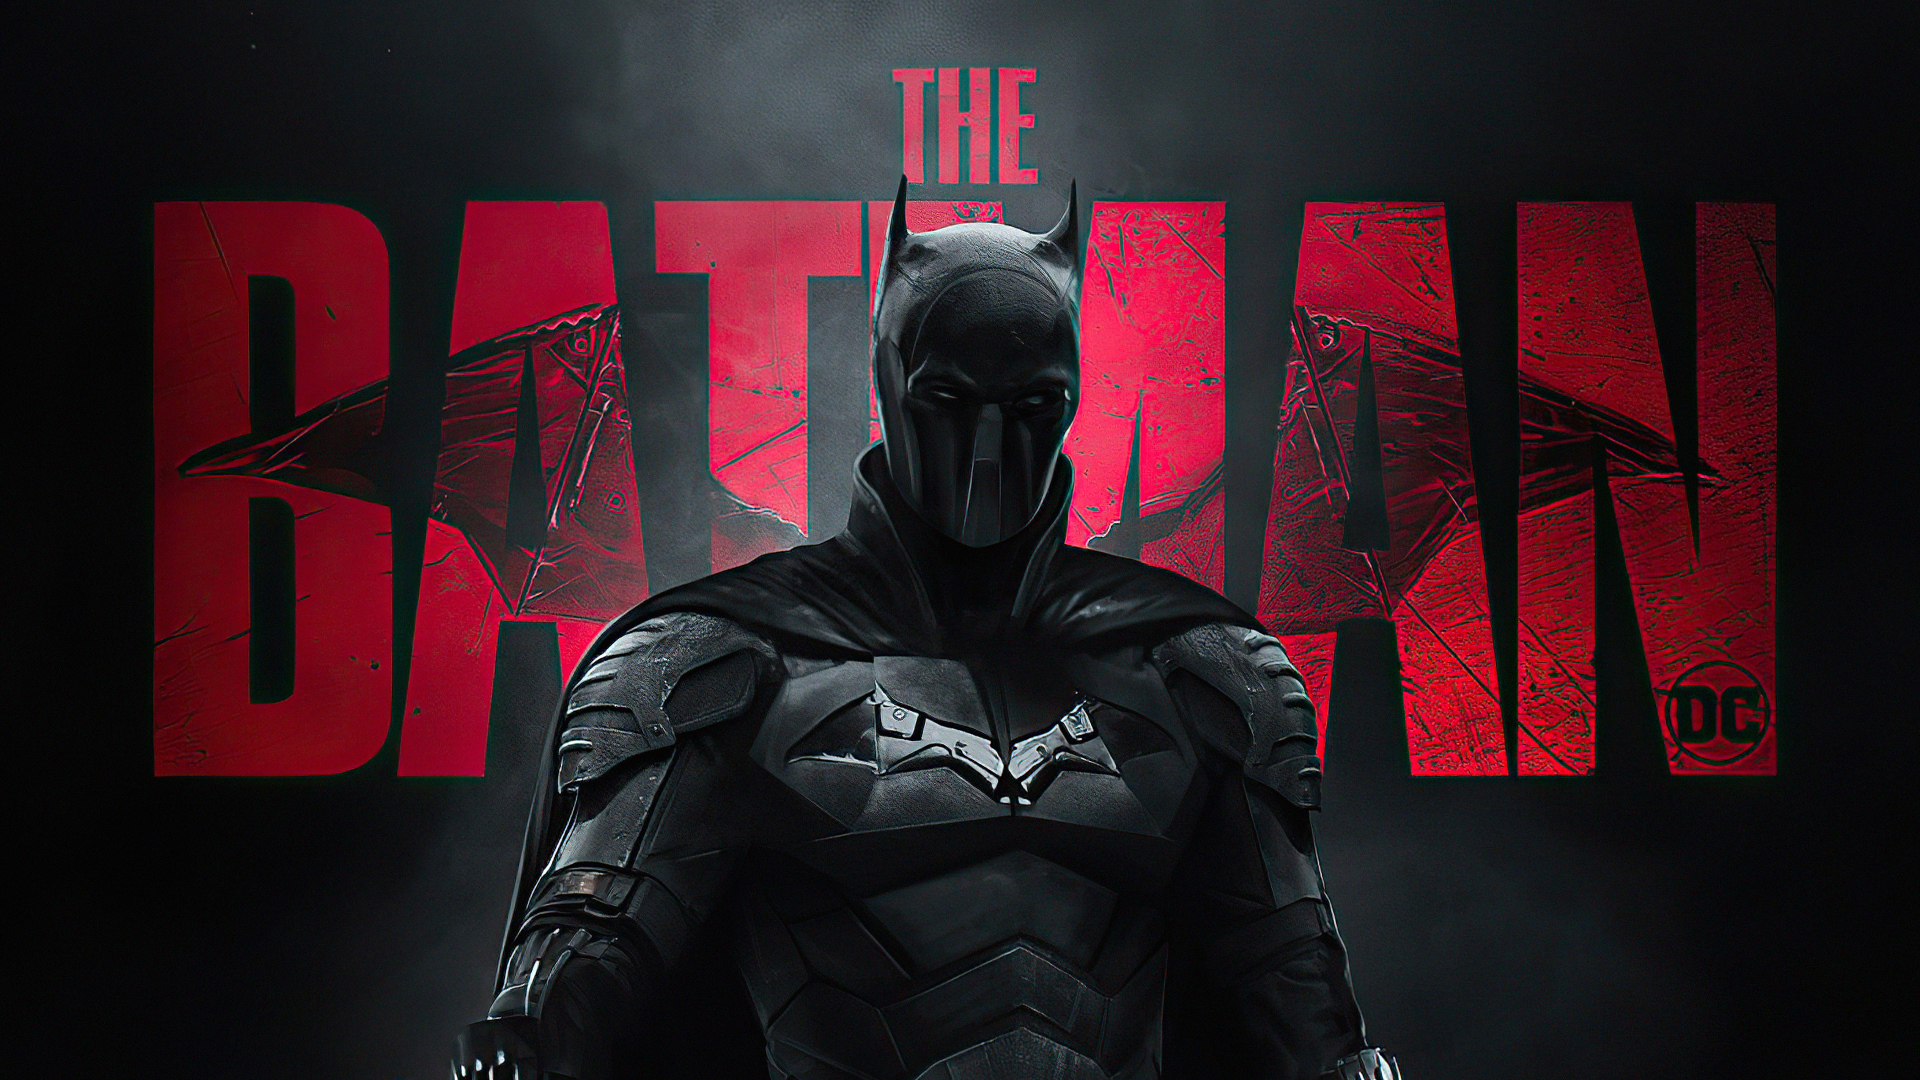 Постер нового фильма Бэтмен